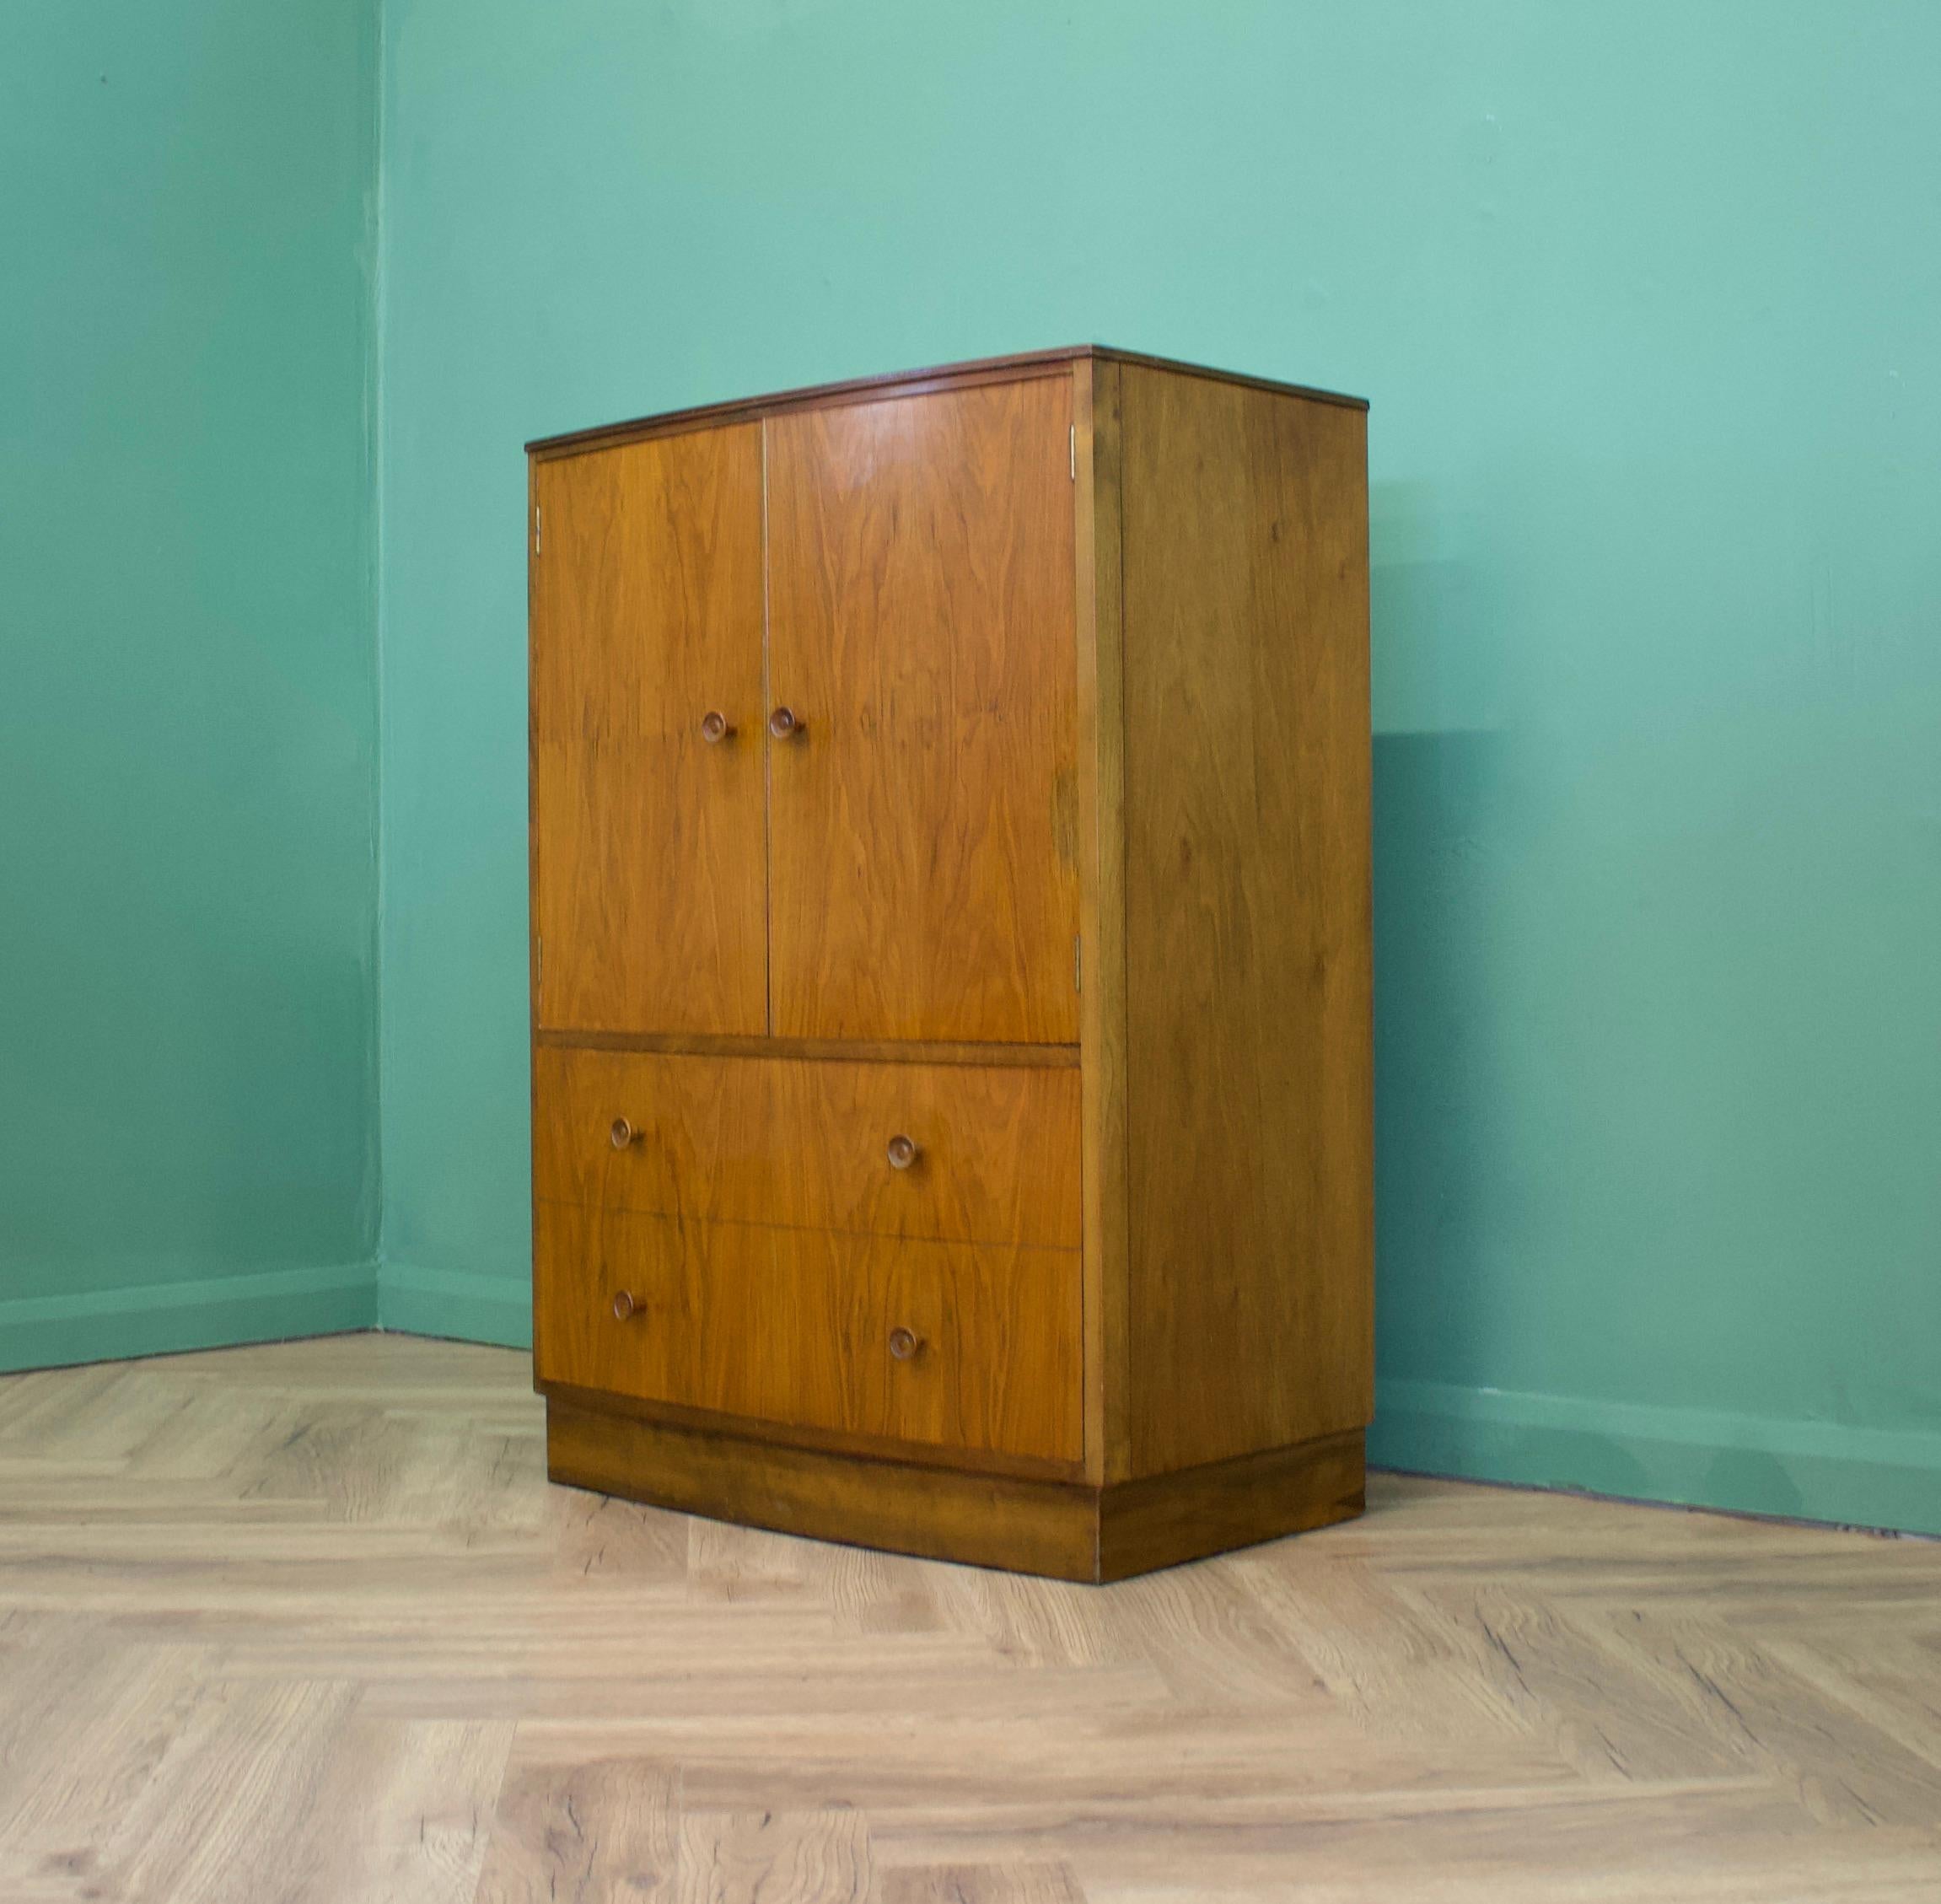 British Midcentury Vintage Art Deco Style Walnut Cupboard, Tallboy, Linen Cabinet, 1950